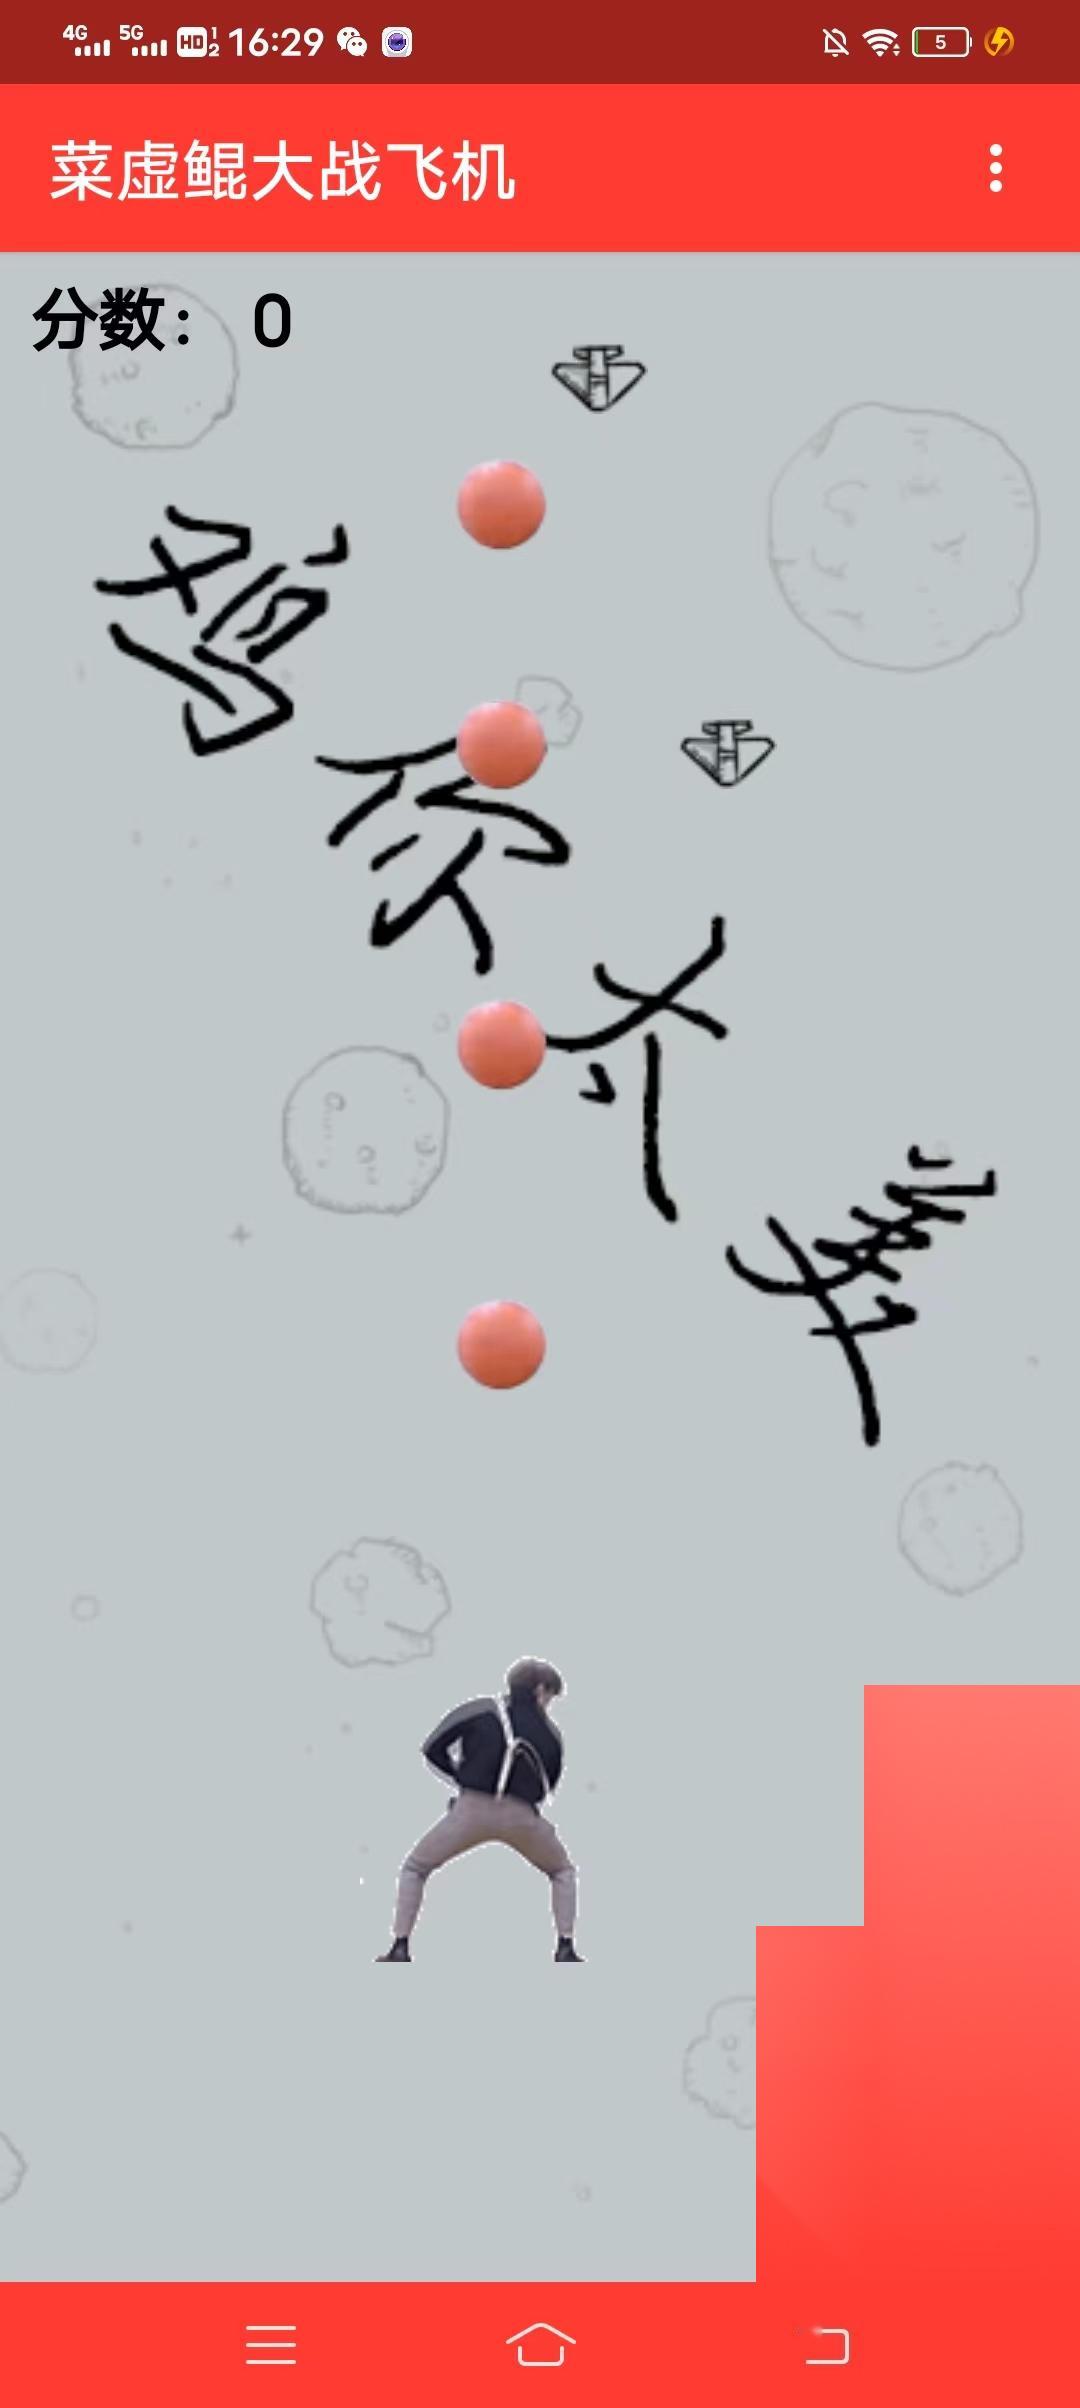 新游戏:《蔡徐坤打飞机》网页小游戏插图